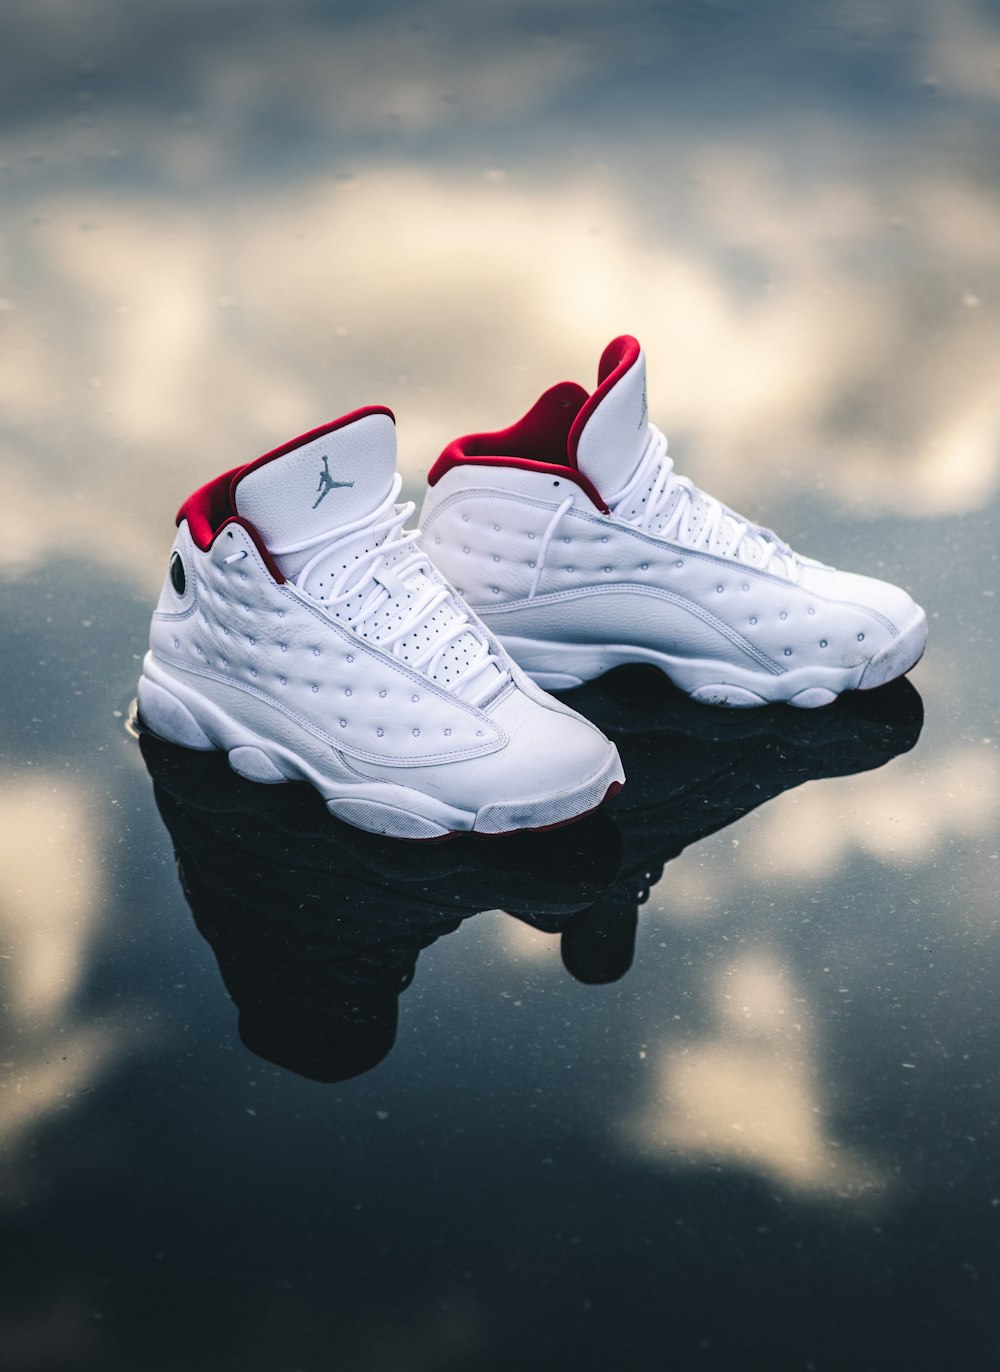 Foto Air Jordan 13 en blanco y rojo – Imagen Zapato gratis en Unsplash